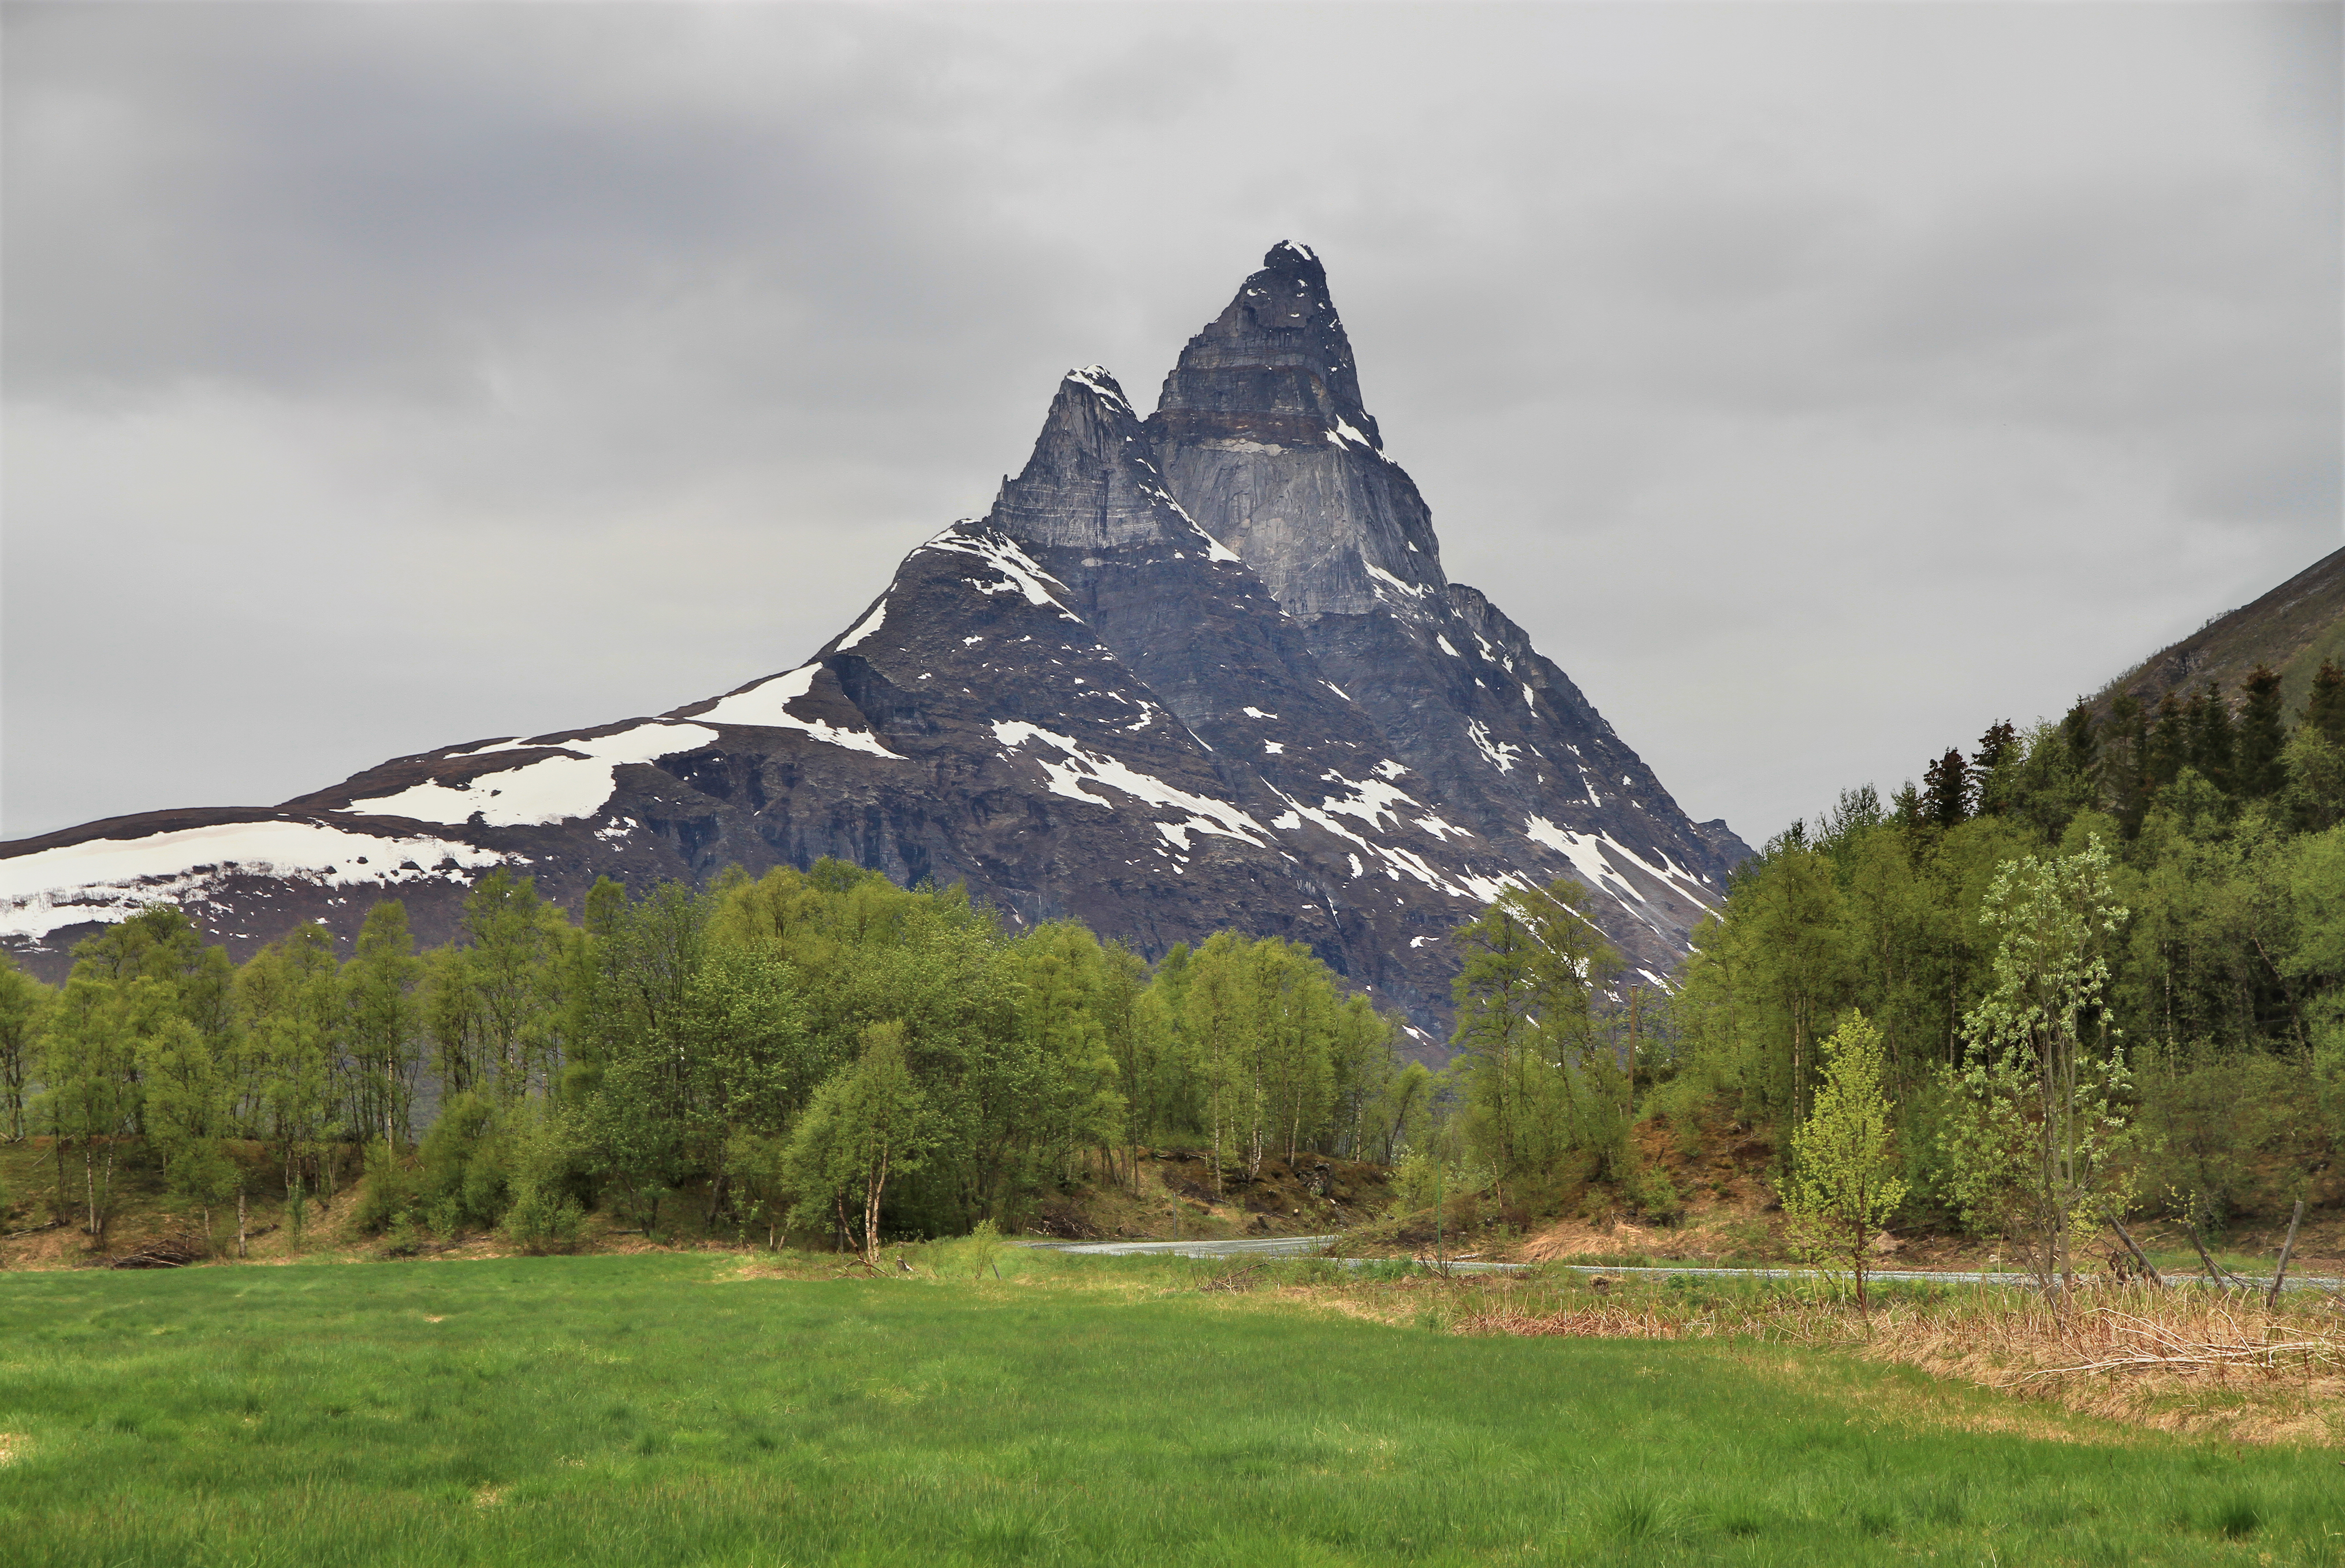 Otertinden as seen from the southeast, Signaldalen, 2011 June